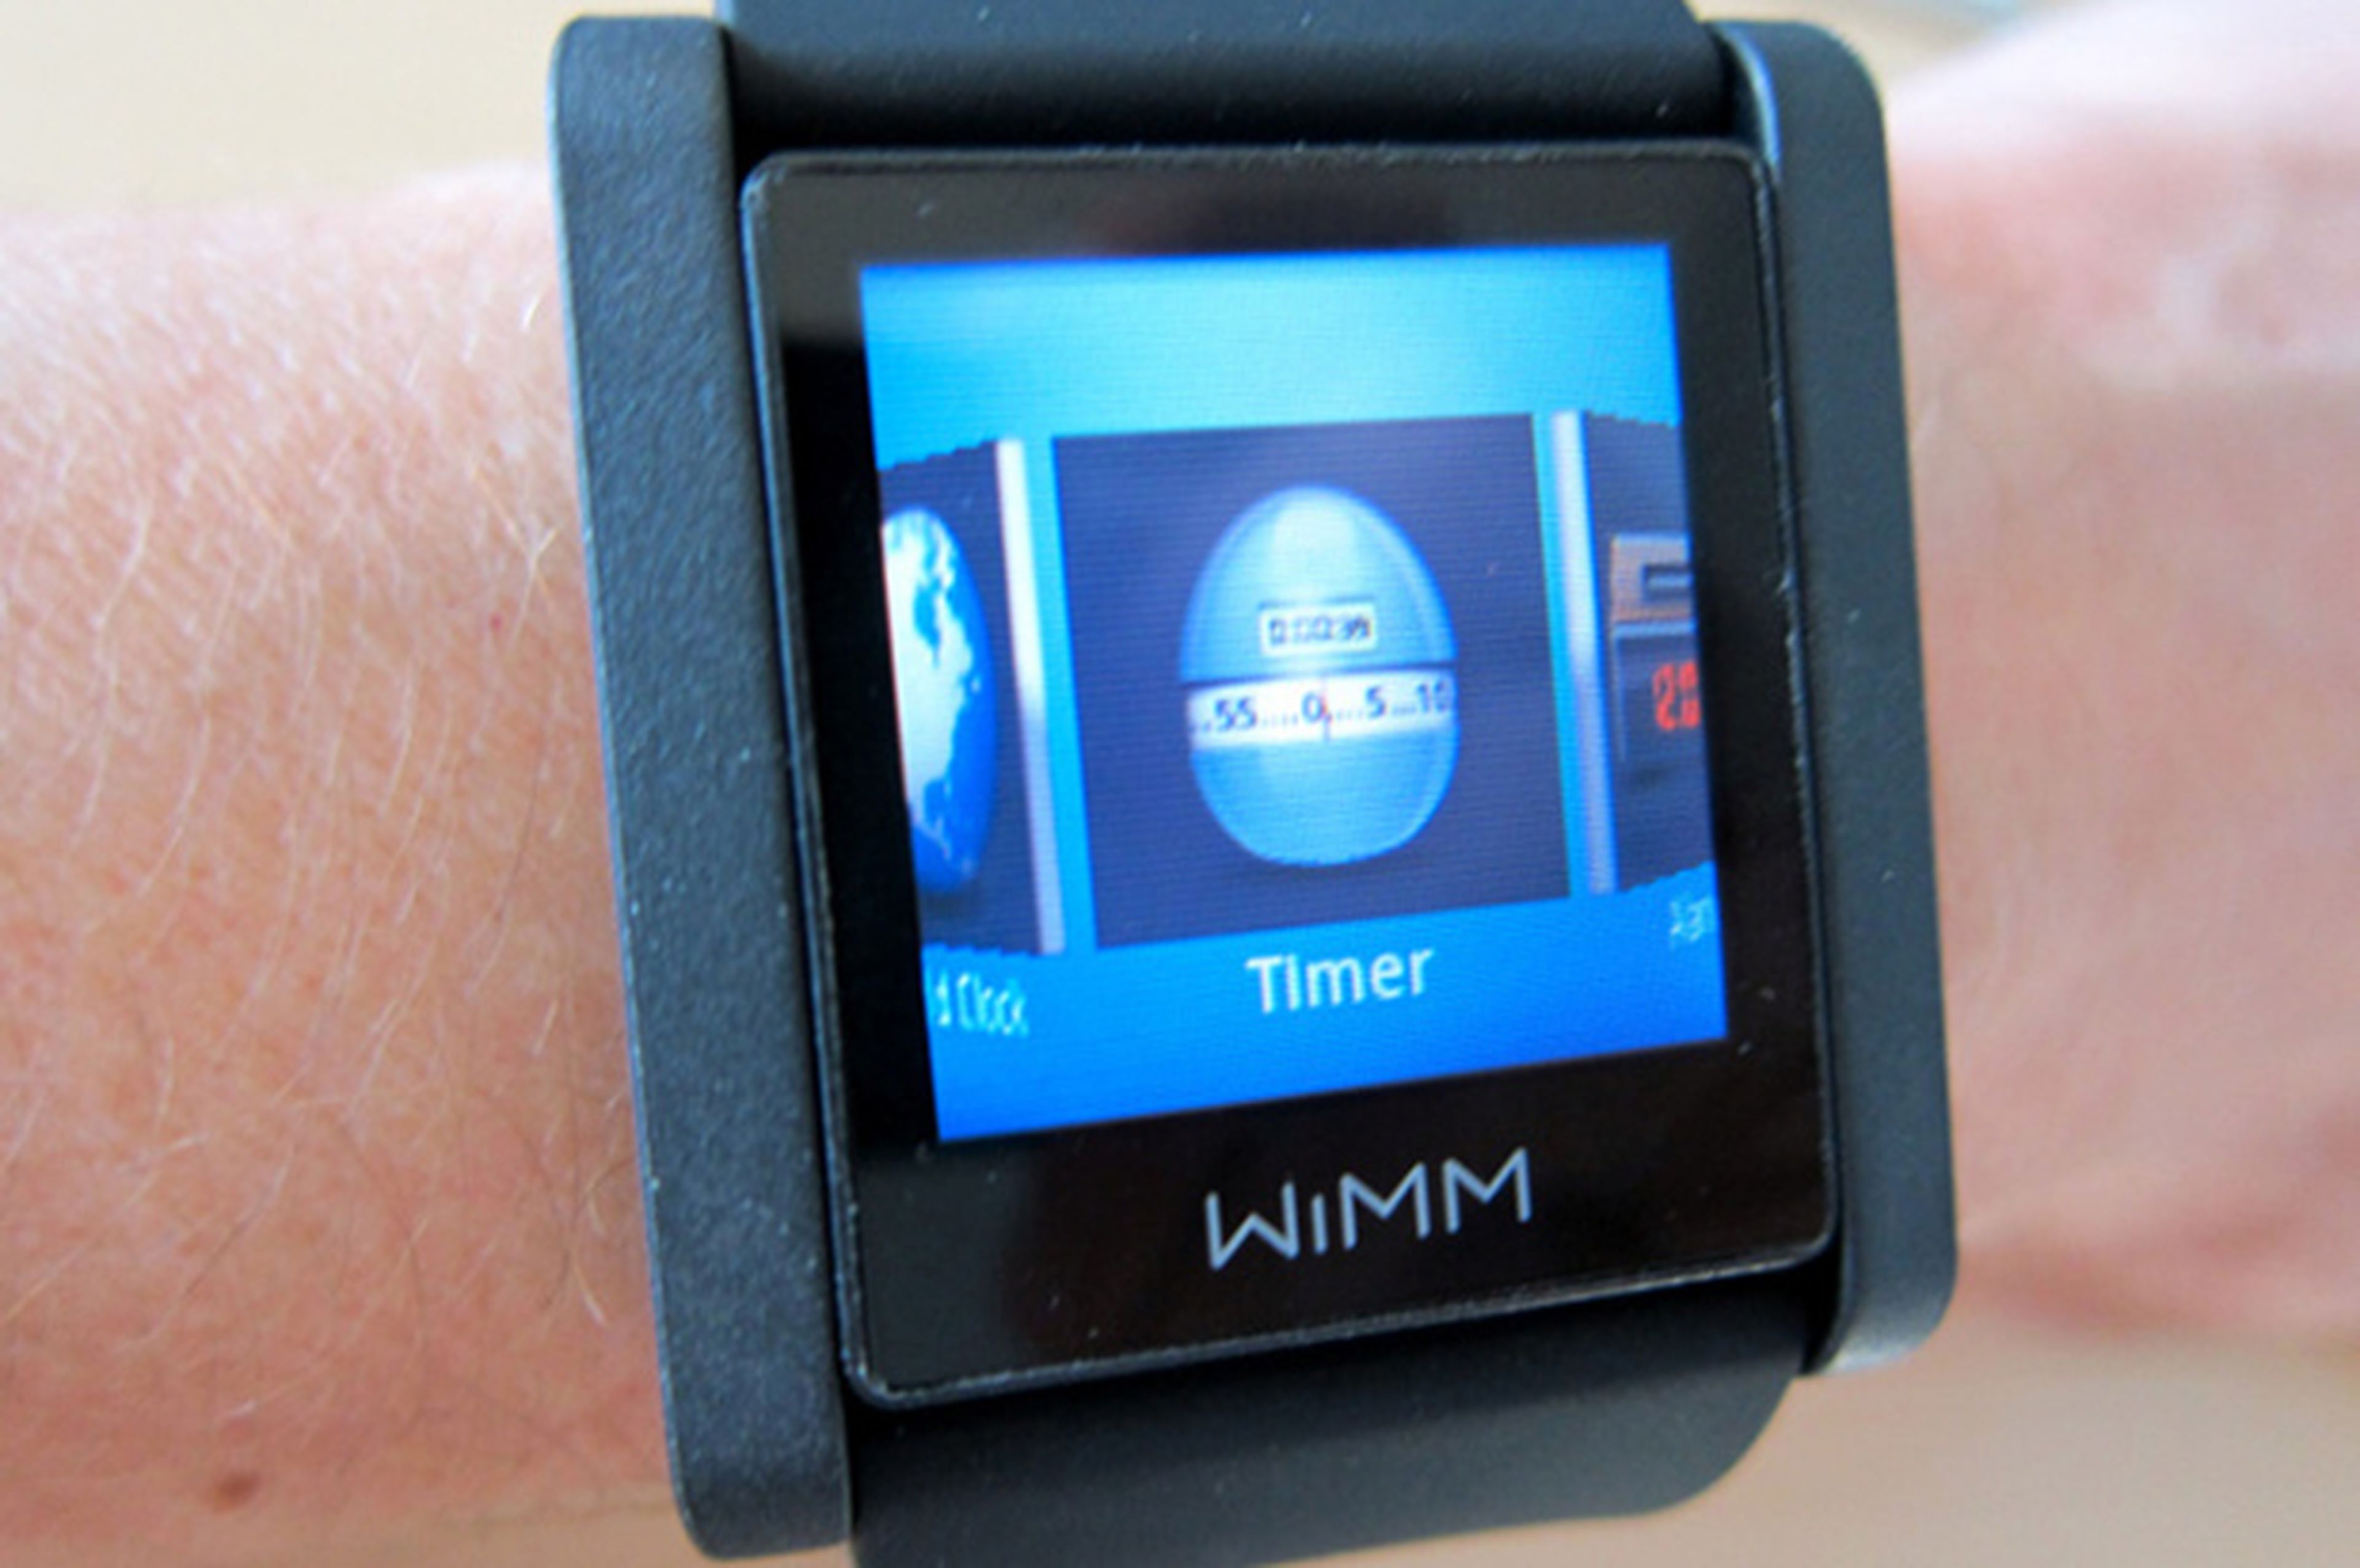 Google compra startup para adelantar su propio smartwatch